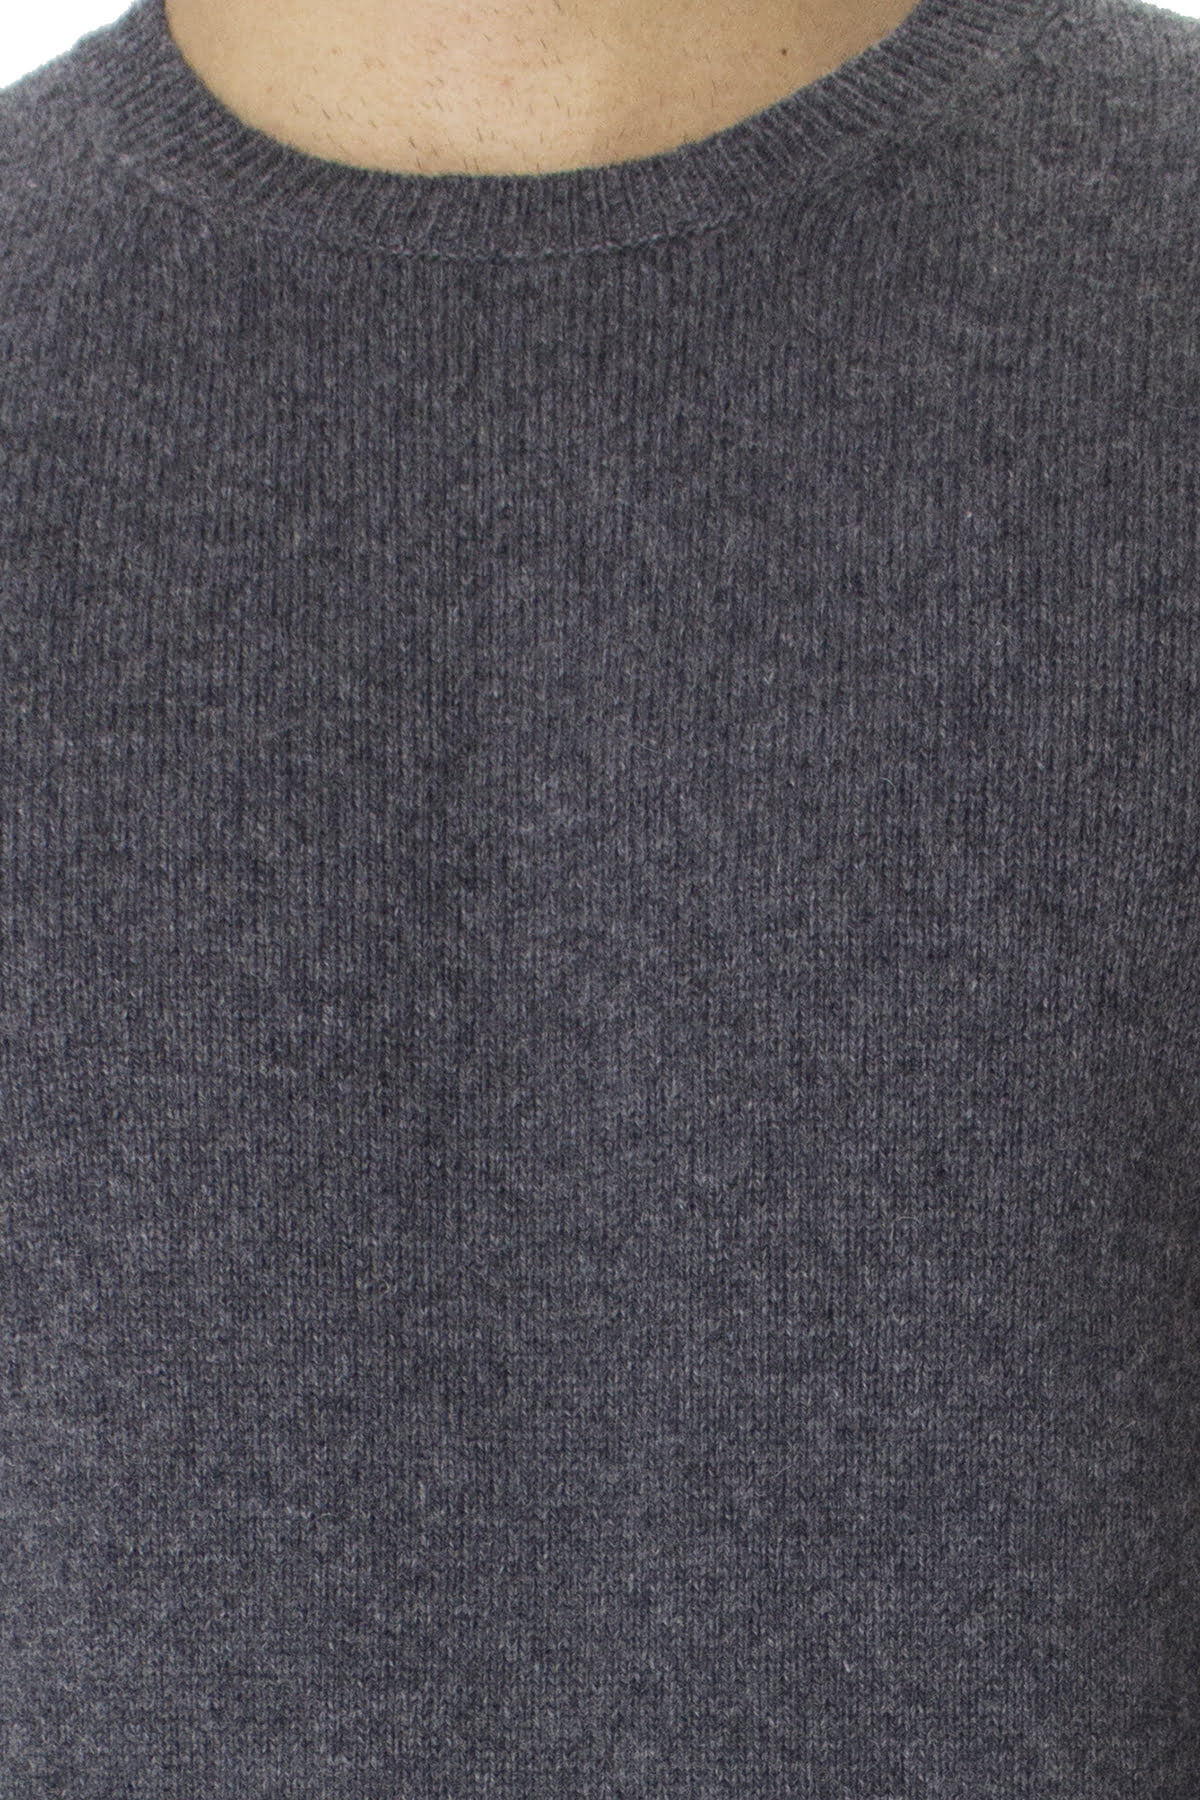 Maglione uomo Girocollo grigio in lana con righe sul fondo slim fit made in italy